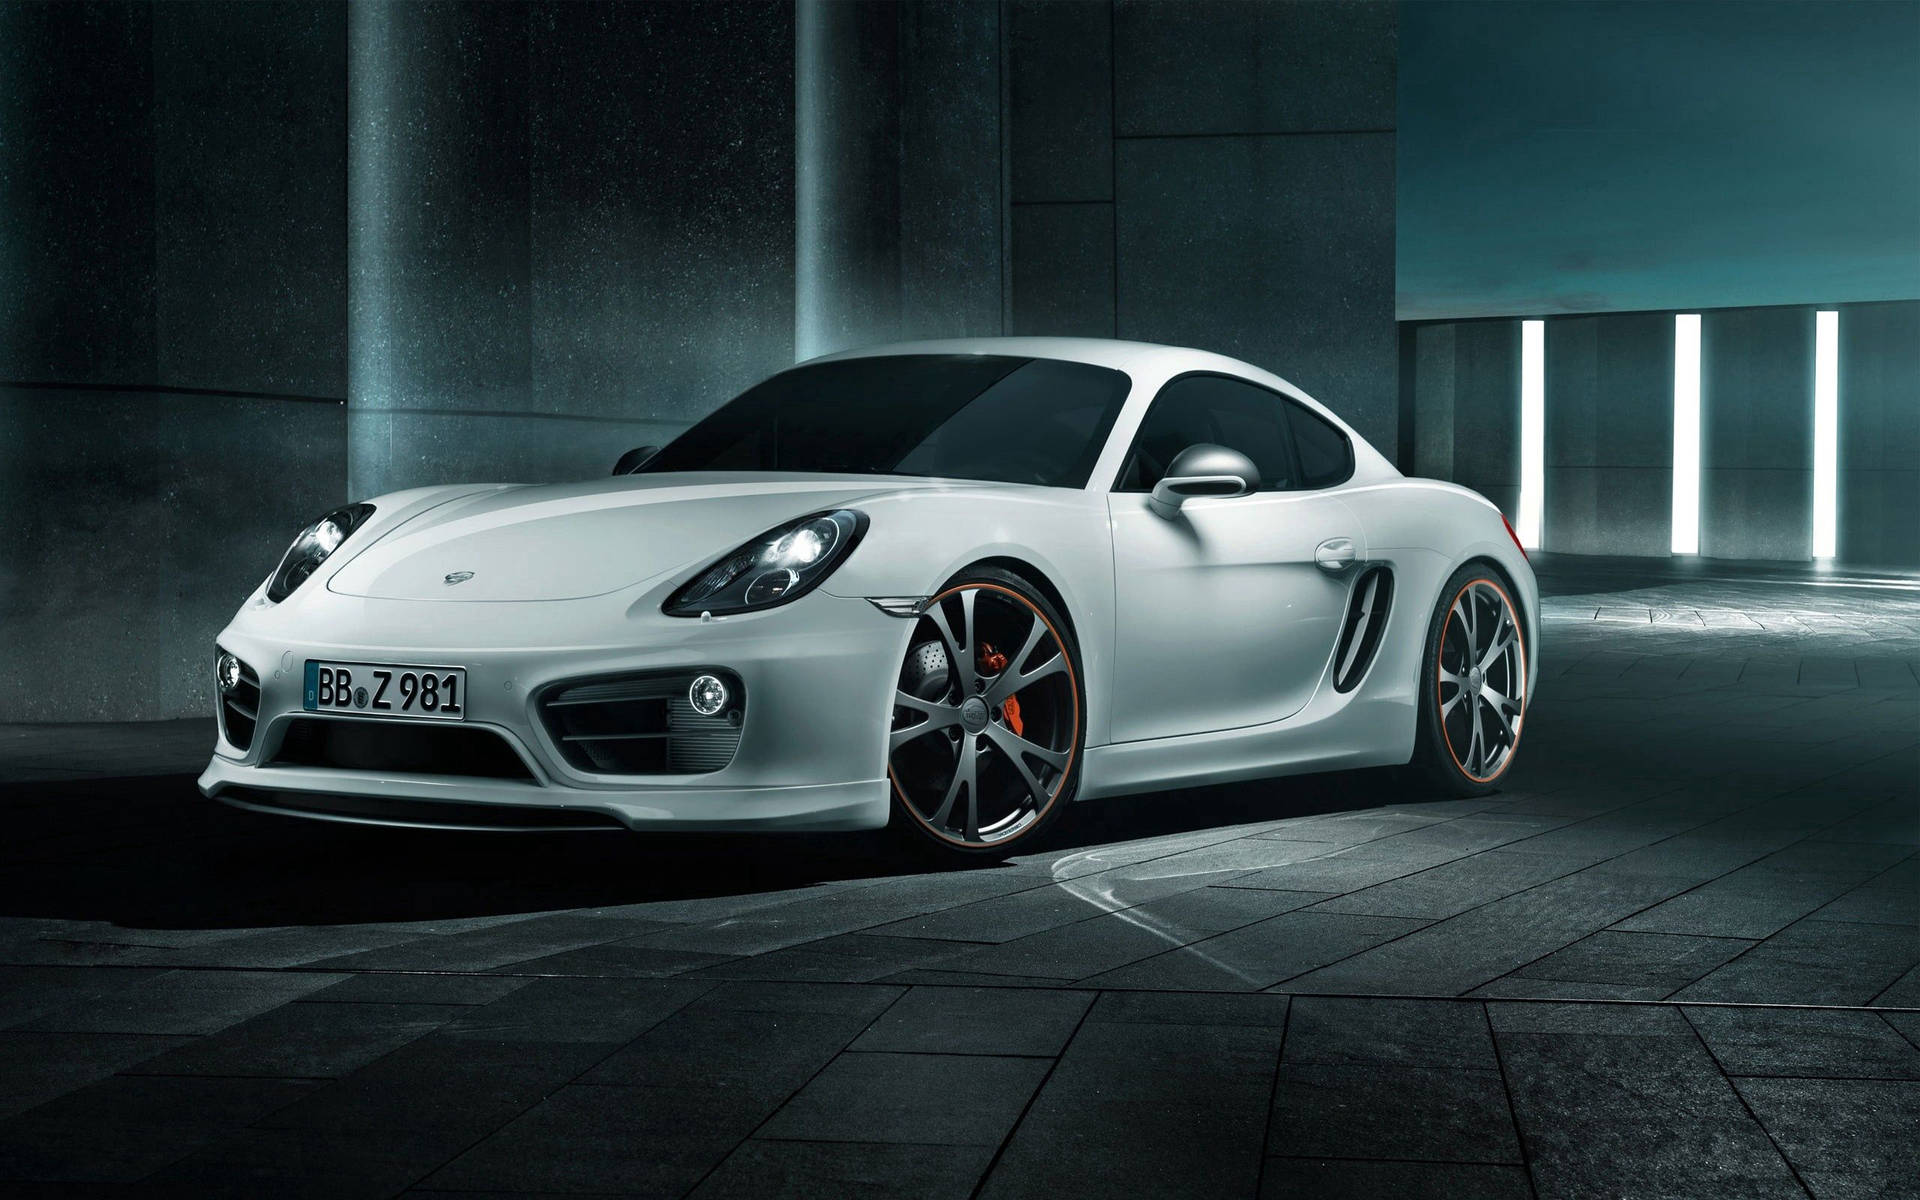 Stunning White Porsche Cayman S Background